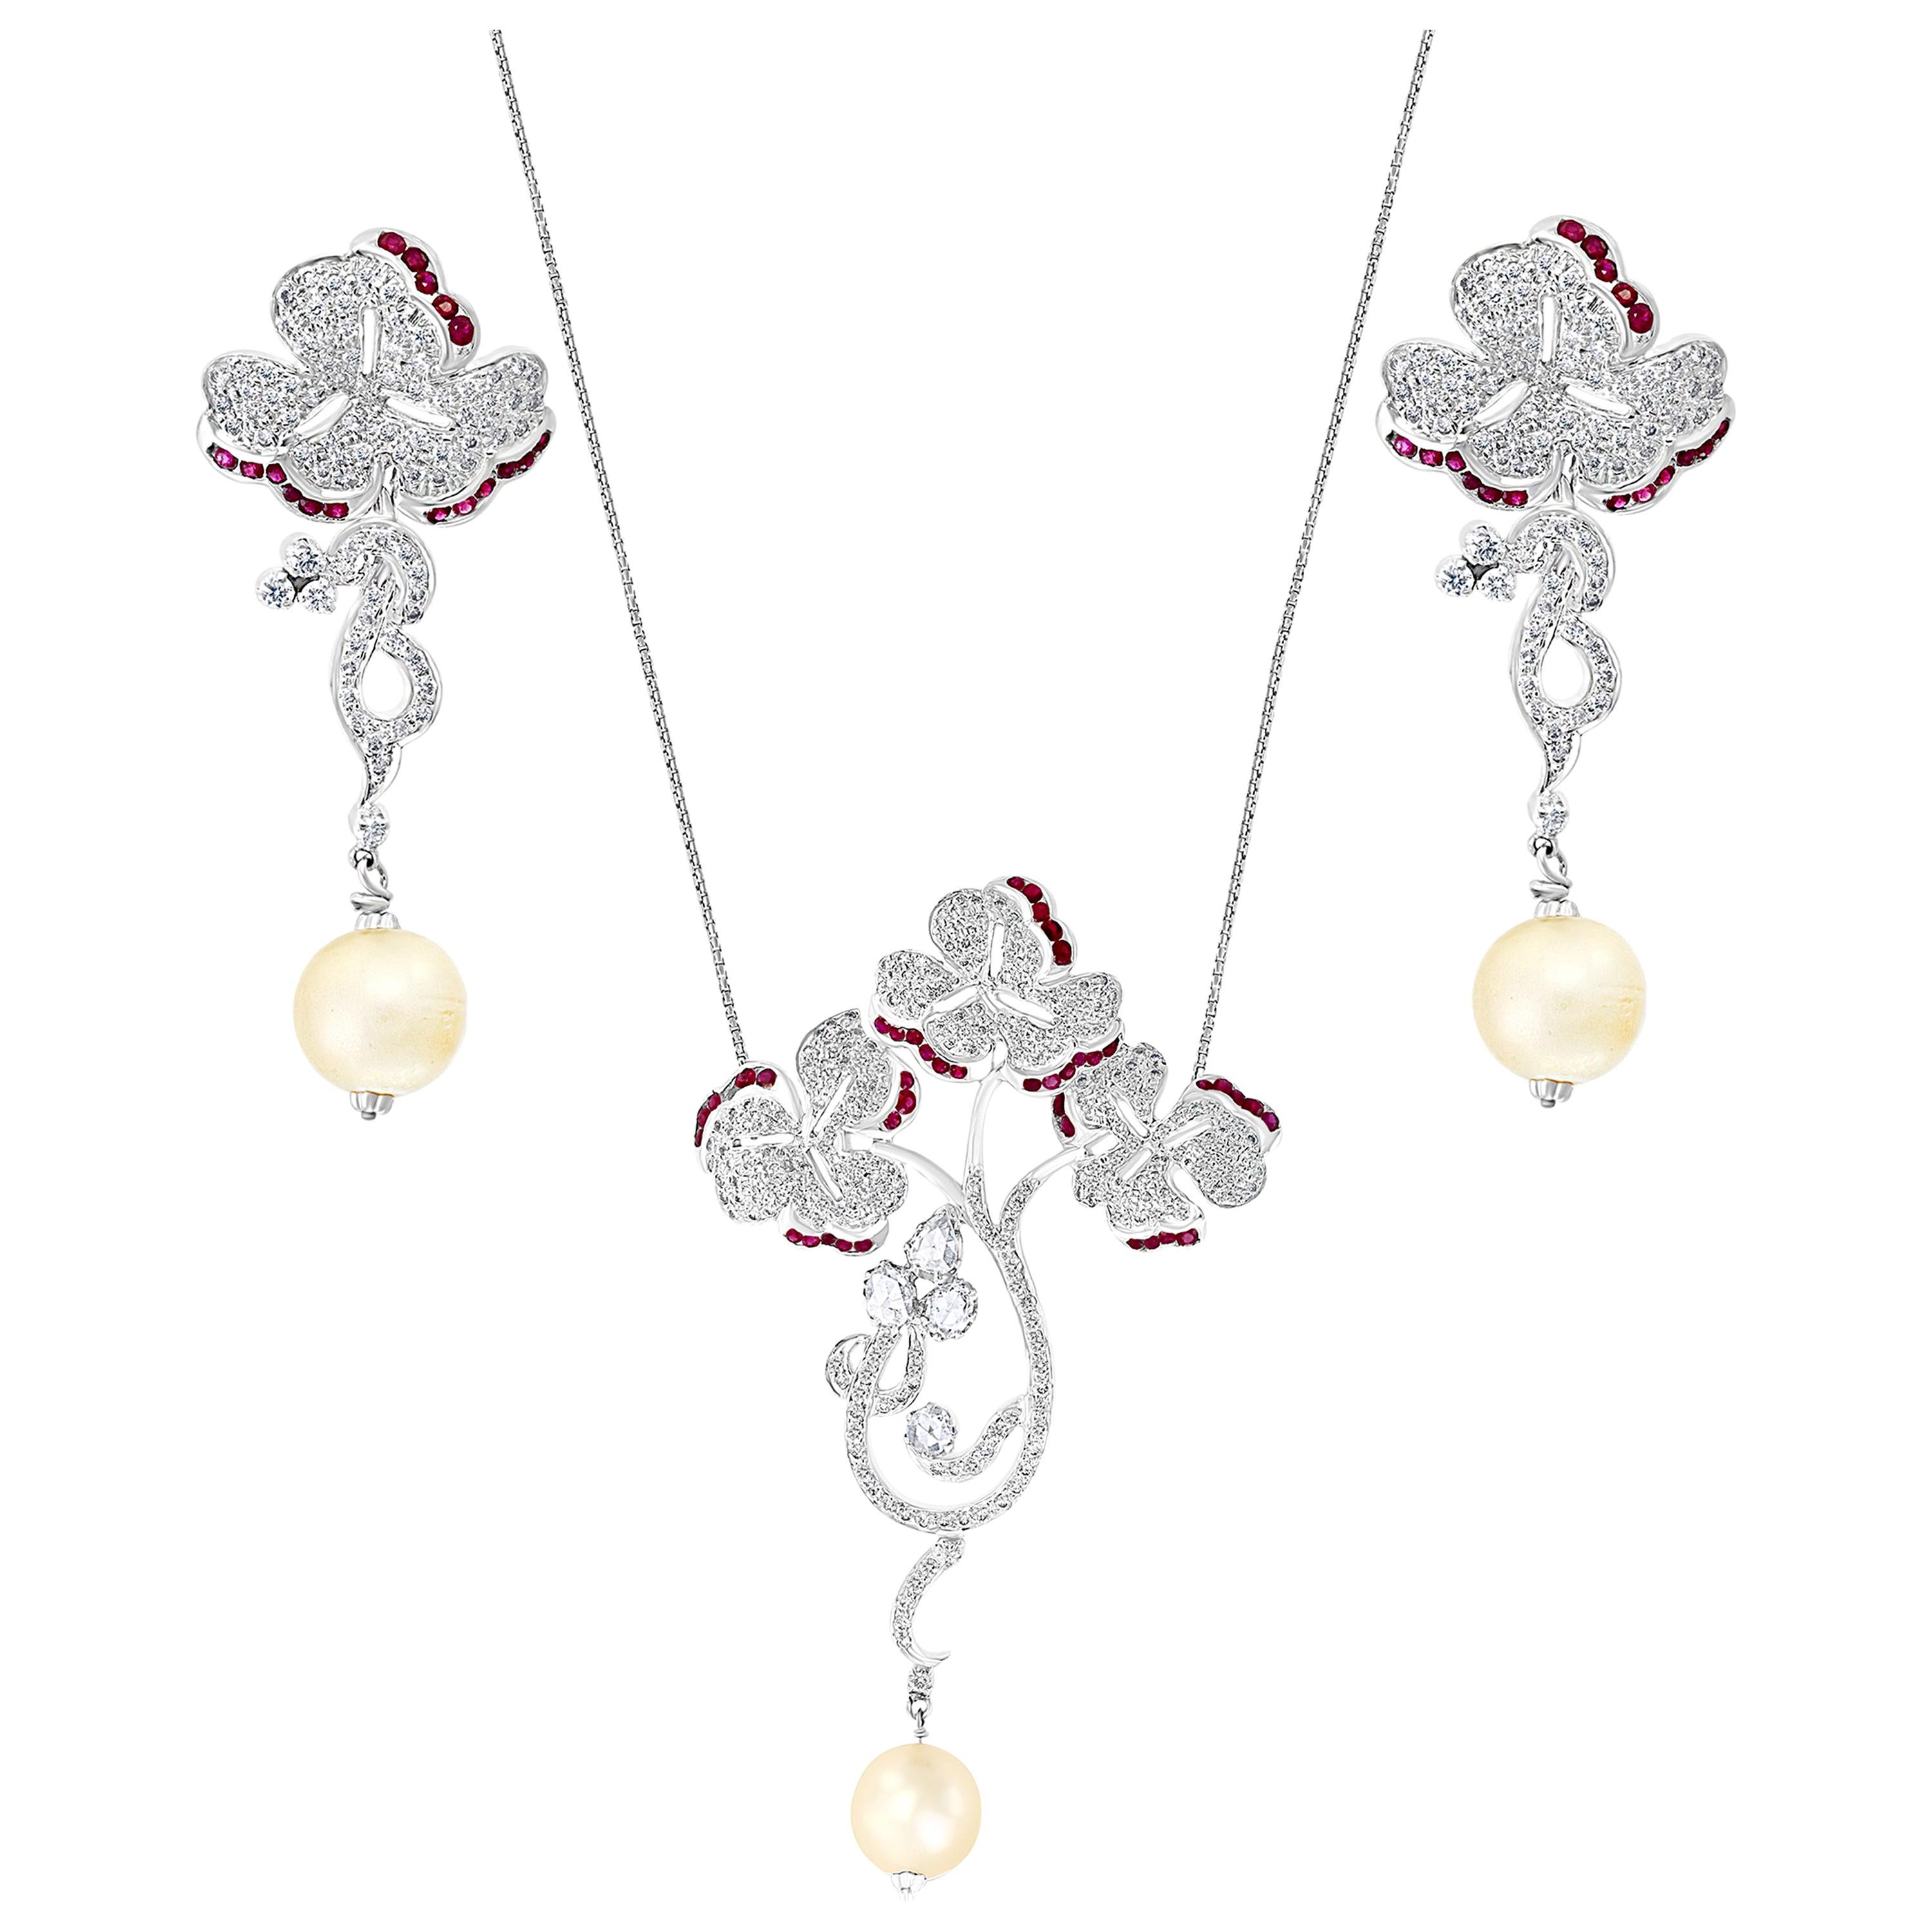 Suite collier et boucles d'oreilles en or blanc 18 carats, perles, rubis et diamants, parure de succession